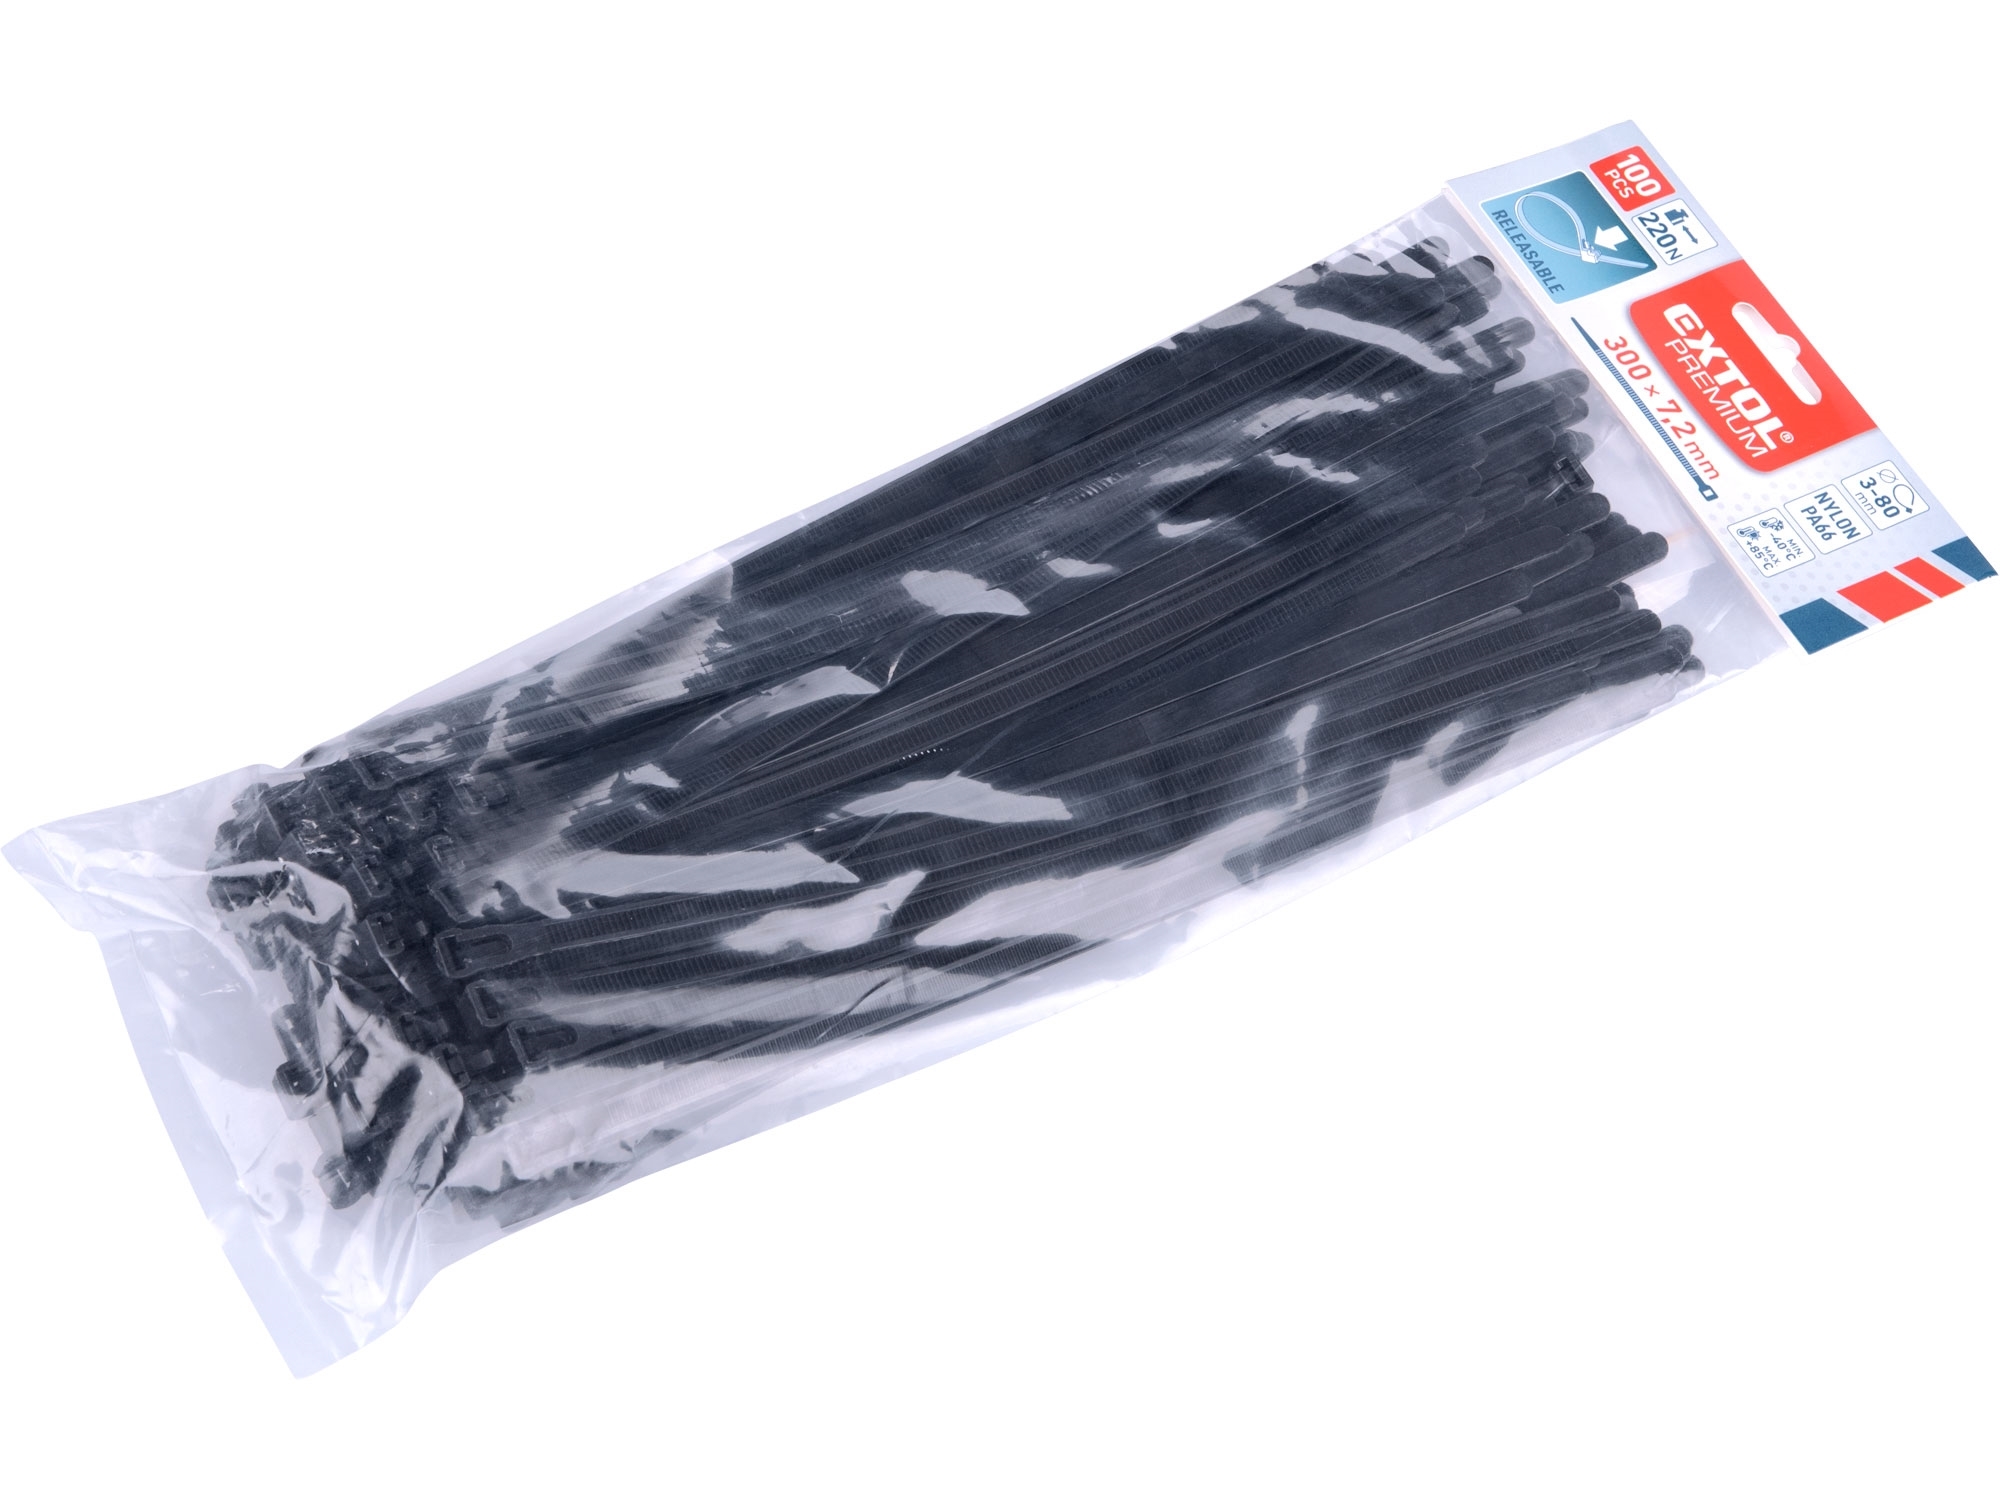 pásky stahovací černé, rozpojitelné, 300x7,2mm, 100ks, nylon P